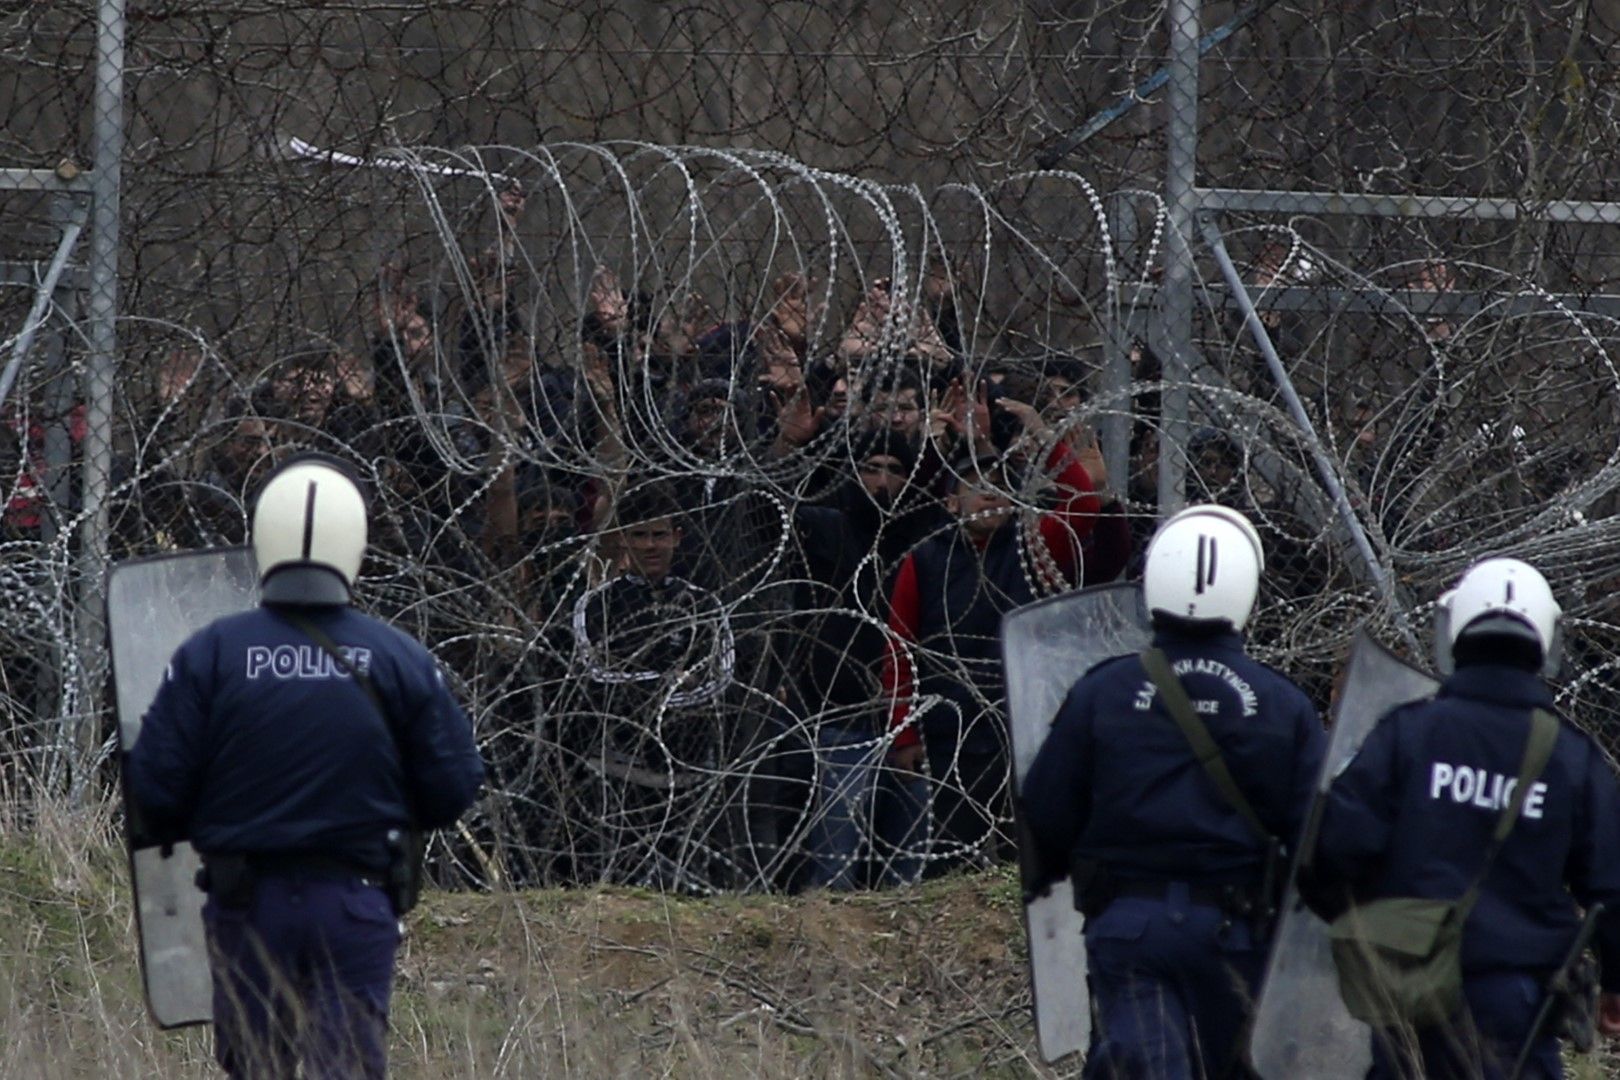 Гръцки полицаи за борба с безредиците стоят пред ограда на границата между Турция и Гърция (Пазаркуле/Кастаниес), за да предотвратят нелегалното й преминаване от събралите се мигранти, 4 март